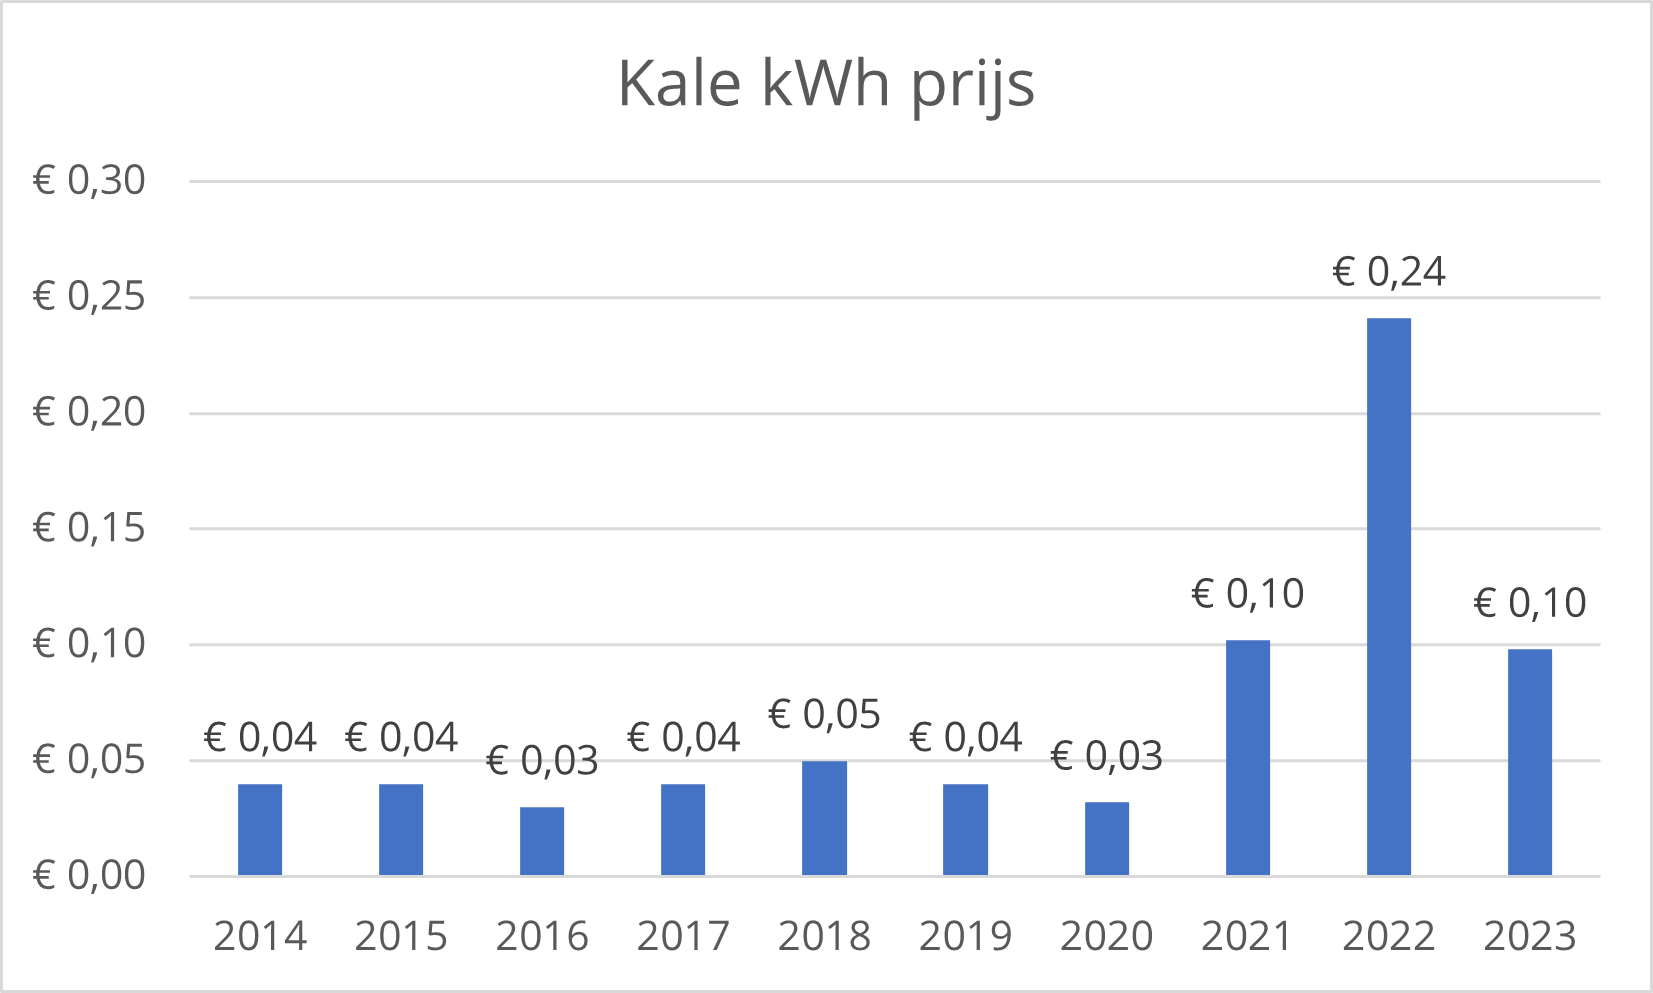 Kale kWh prijs volgens Nieuwe Stroom